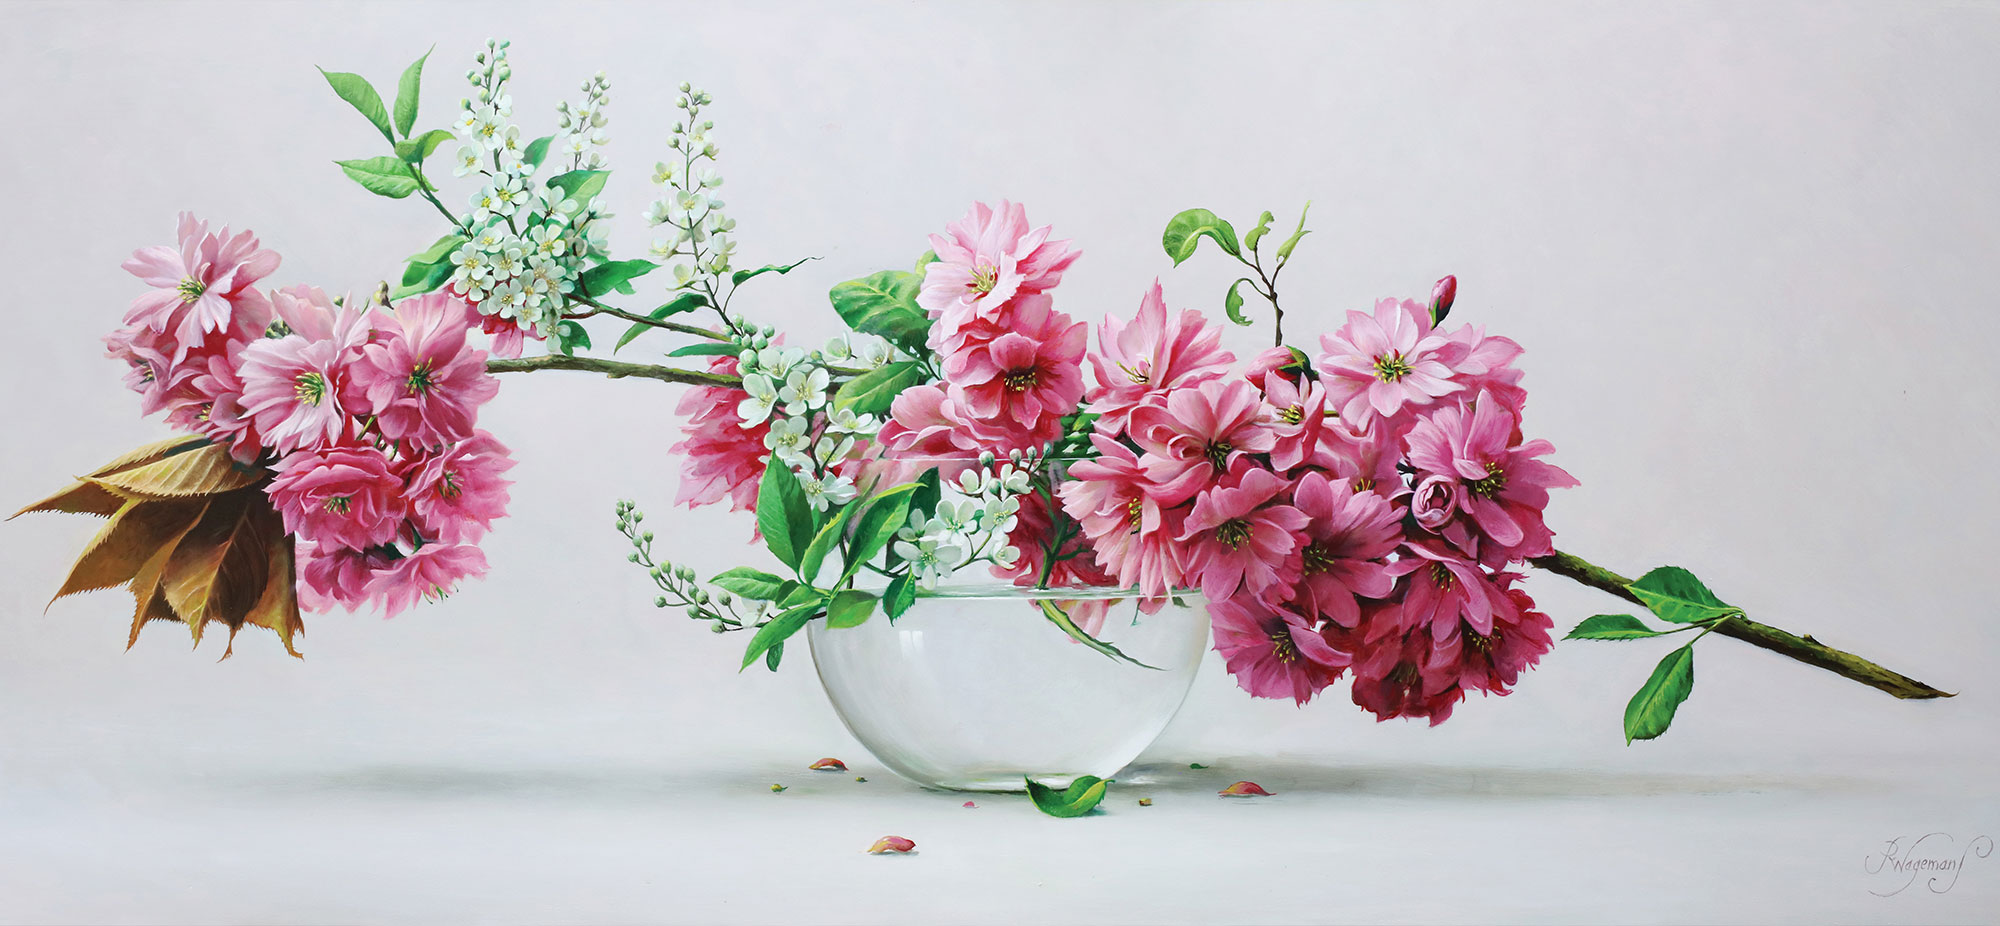 flower-paintings-1